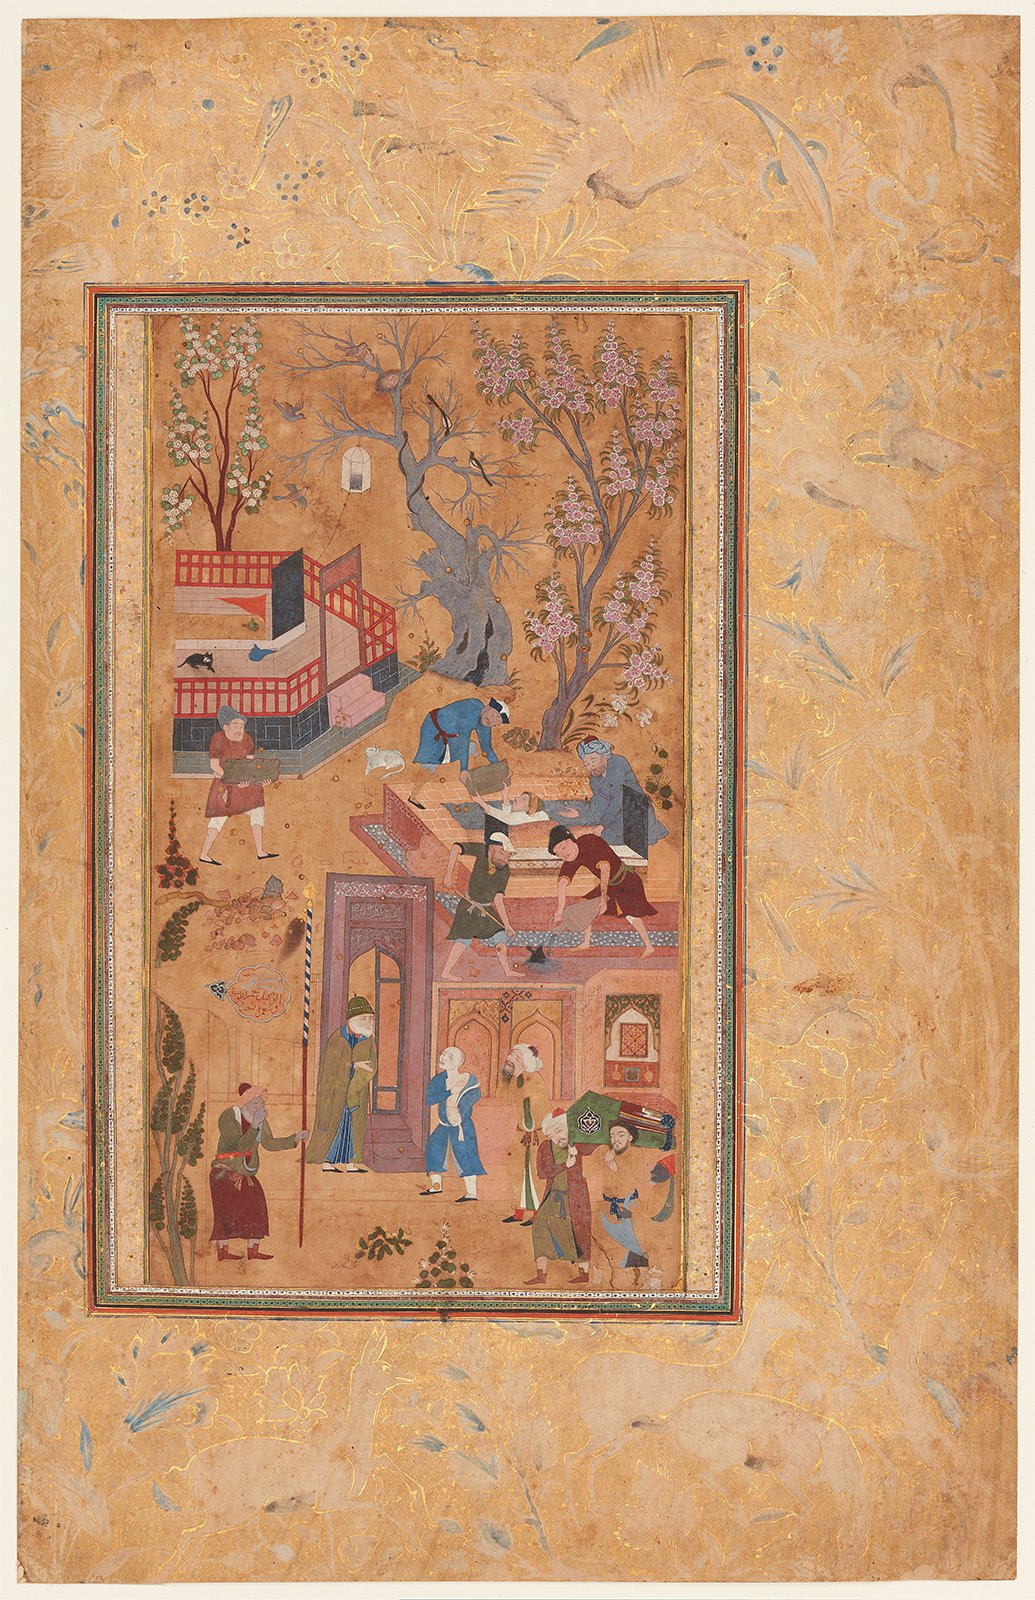 亡き父を追悼する息子 by Sahifa Banu (attributed) - 1620年頃 - 22.3 x 12.2 cm 